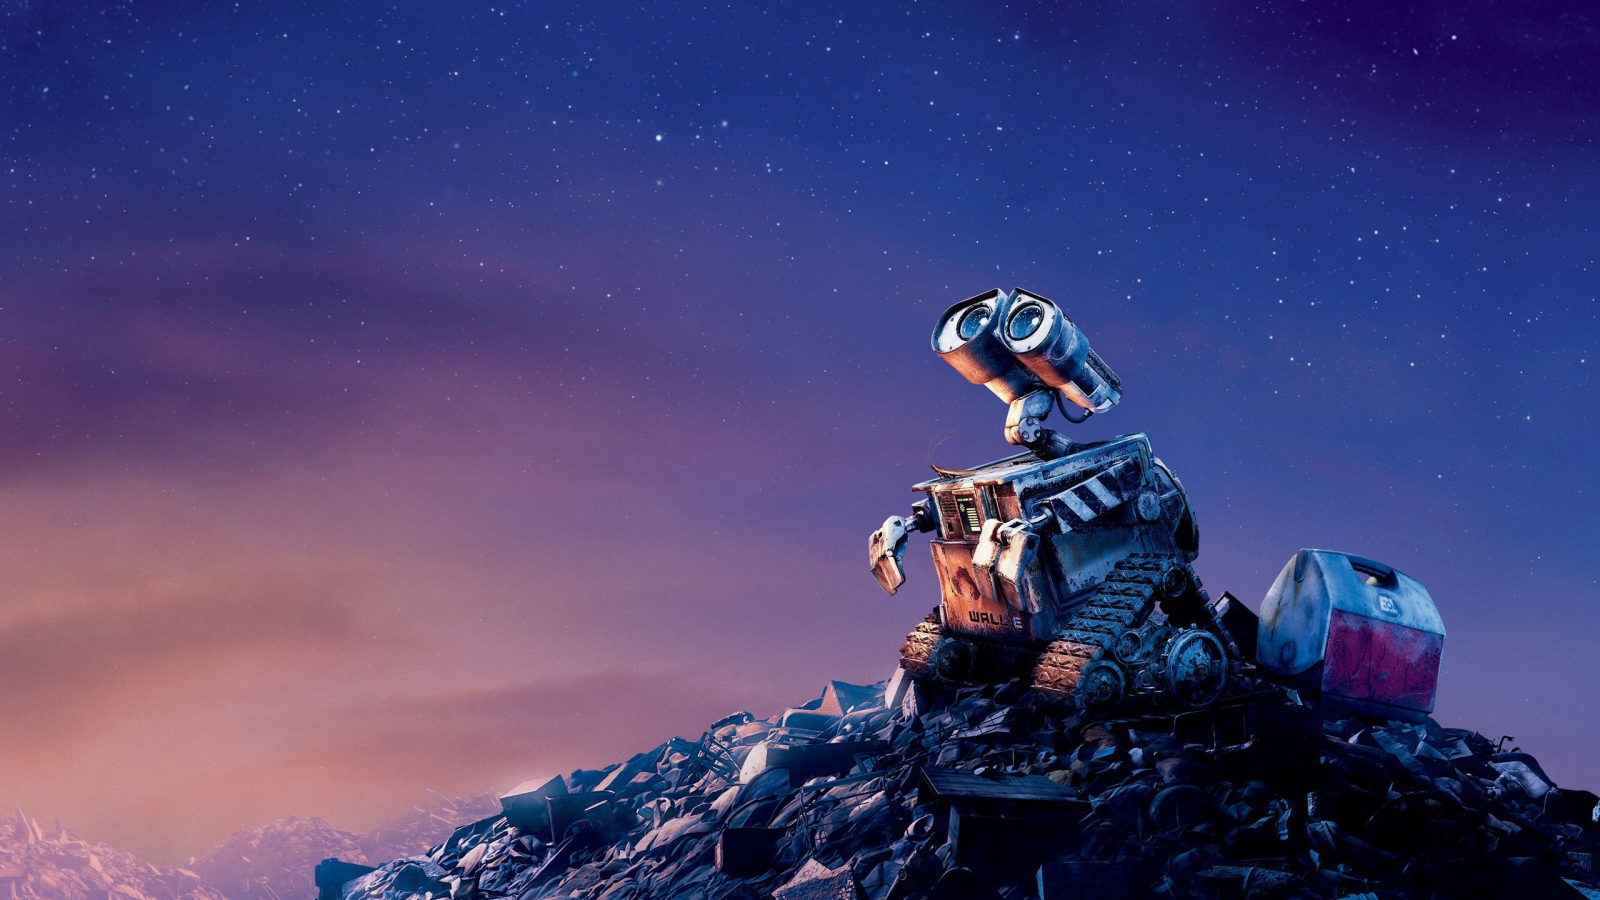 Робот WALL·E на куче мусора